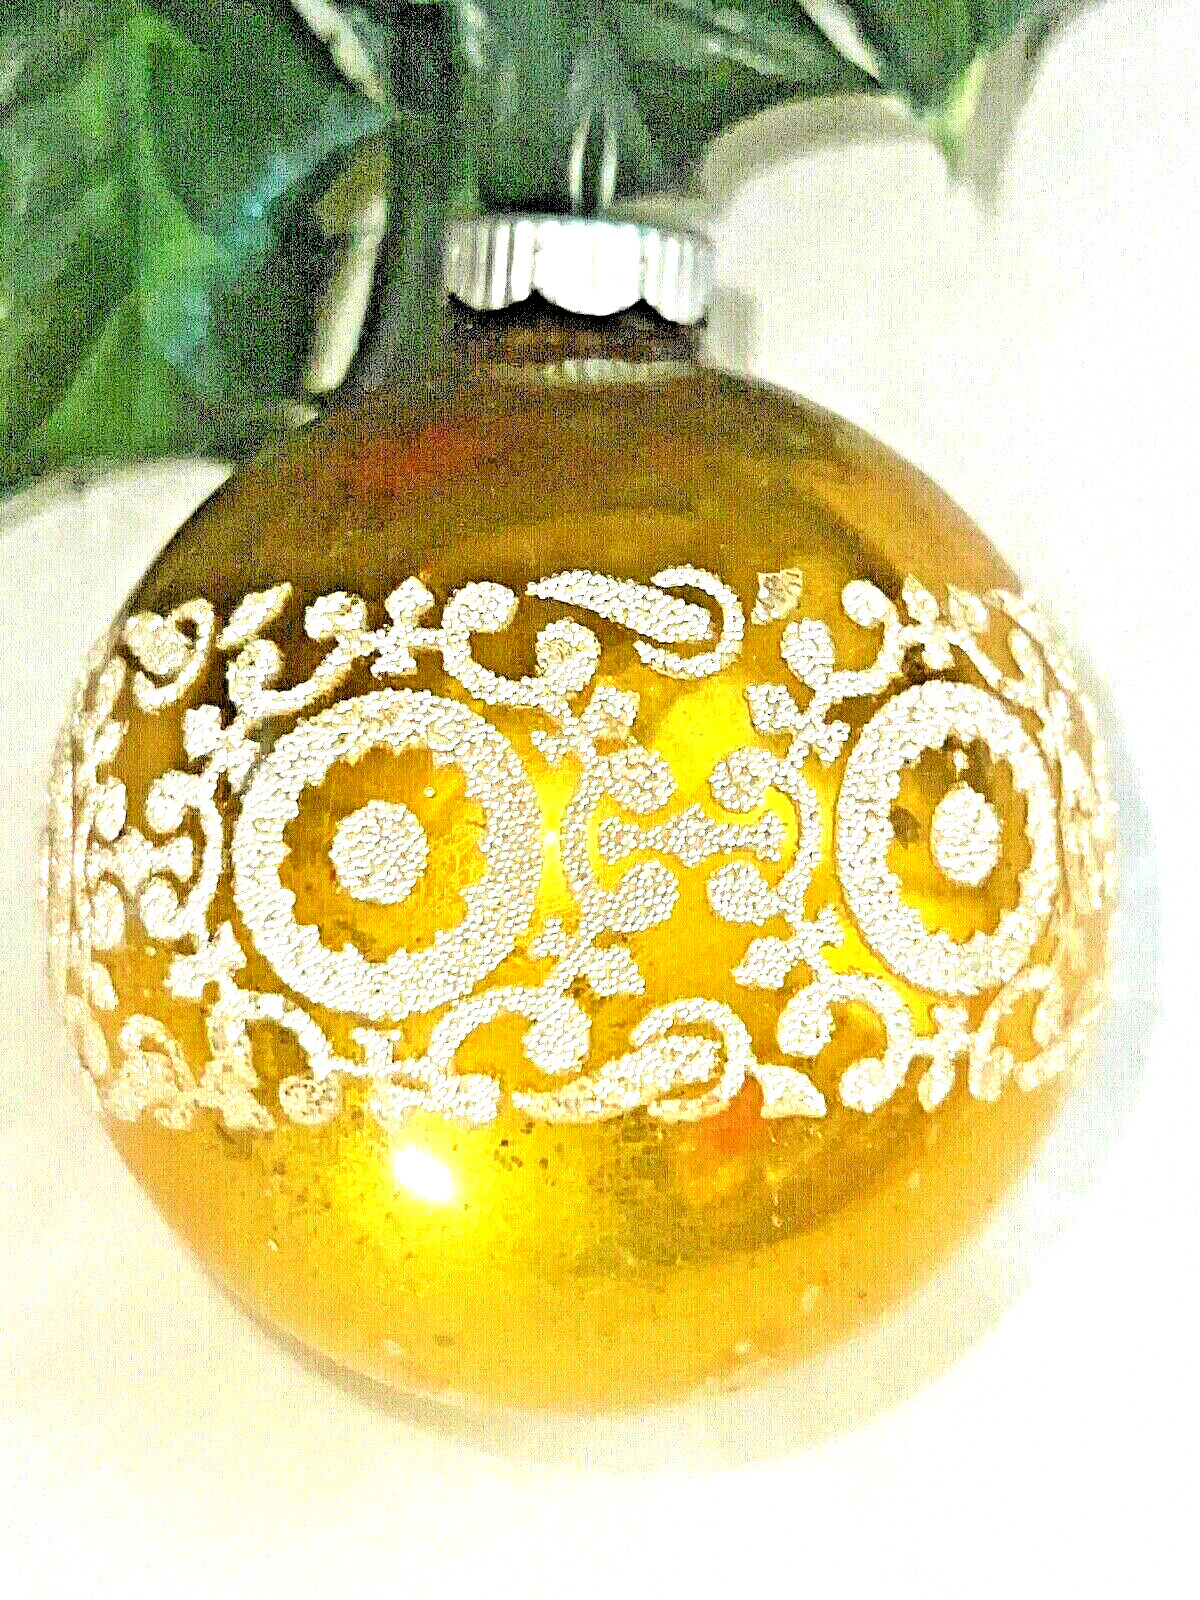 MCM Vintage SHINY BRITE Gold WHITE GLITTER STENCIL Glass CHRISTMAS ORNAMENT